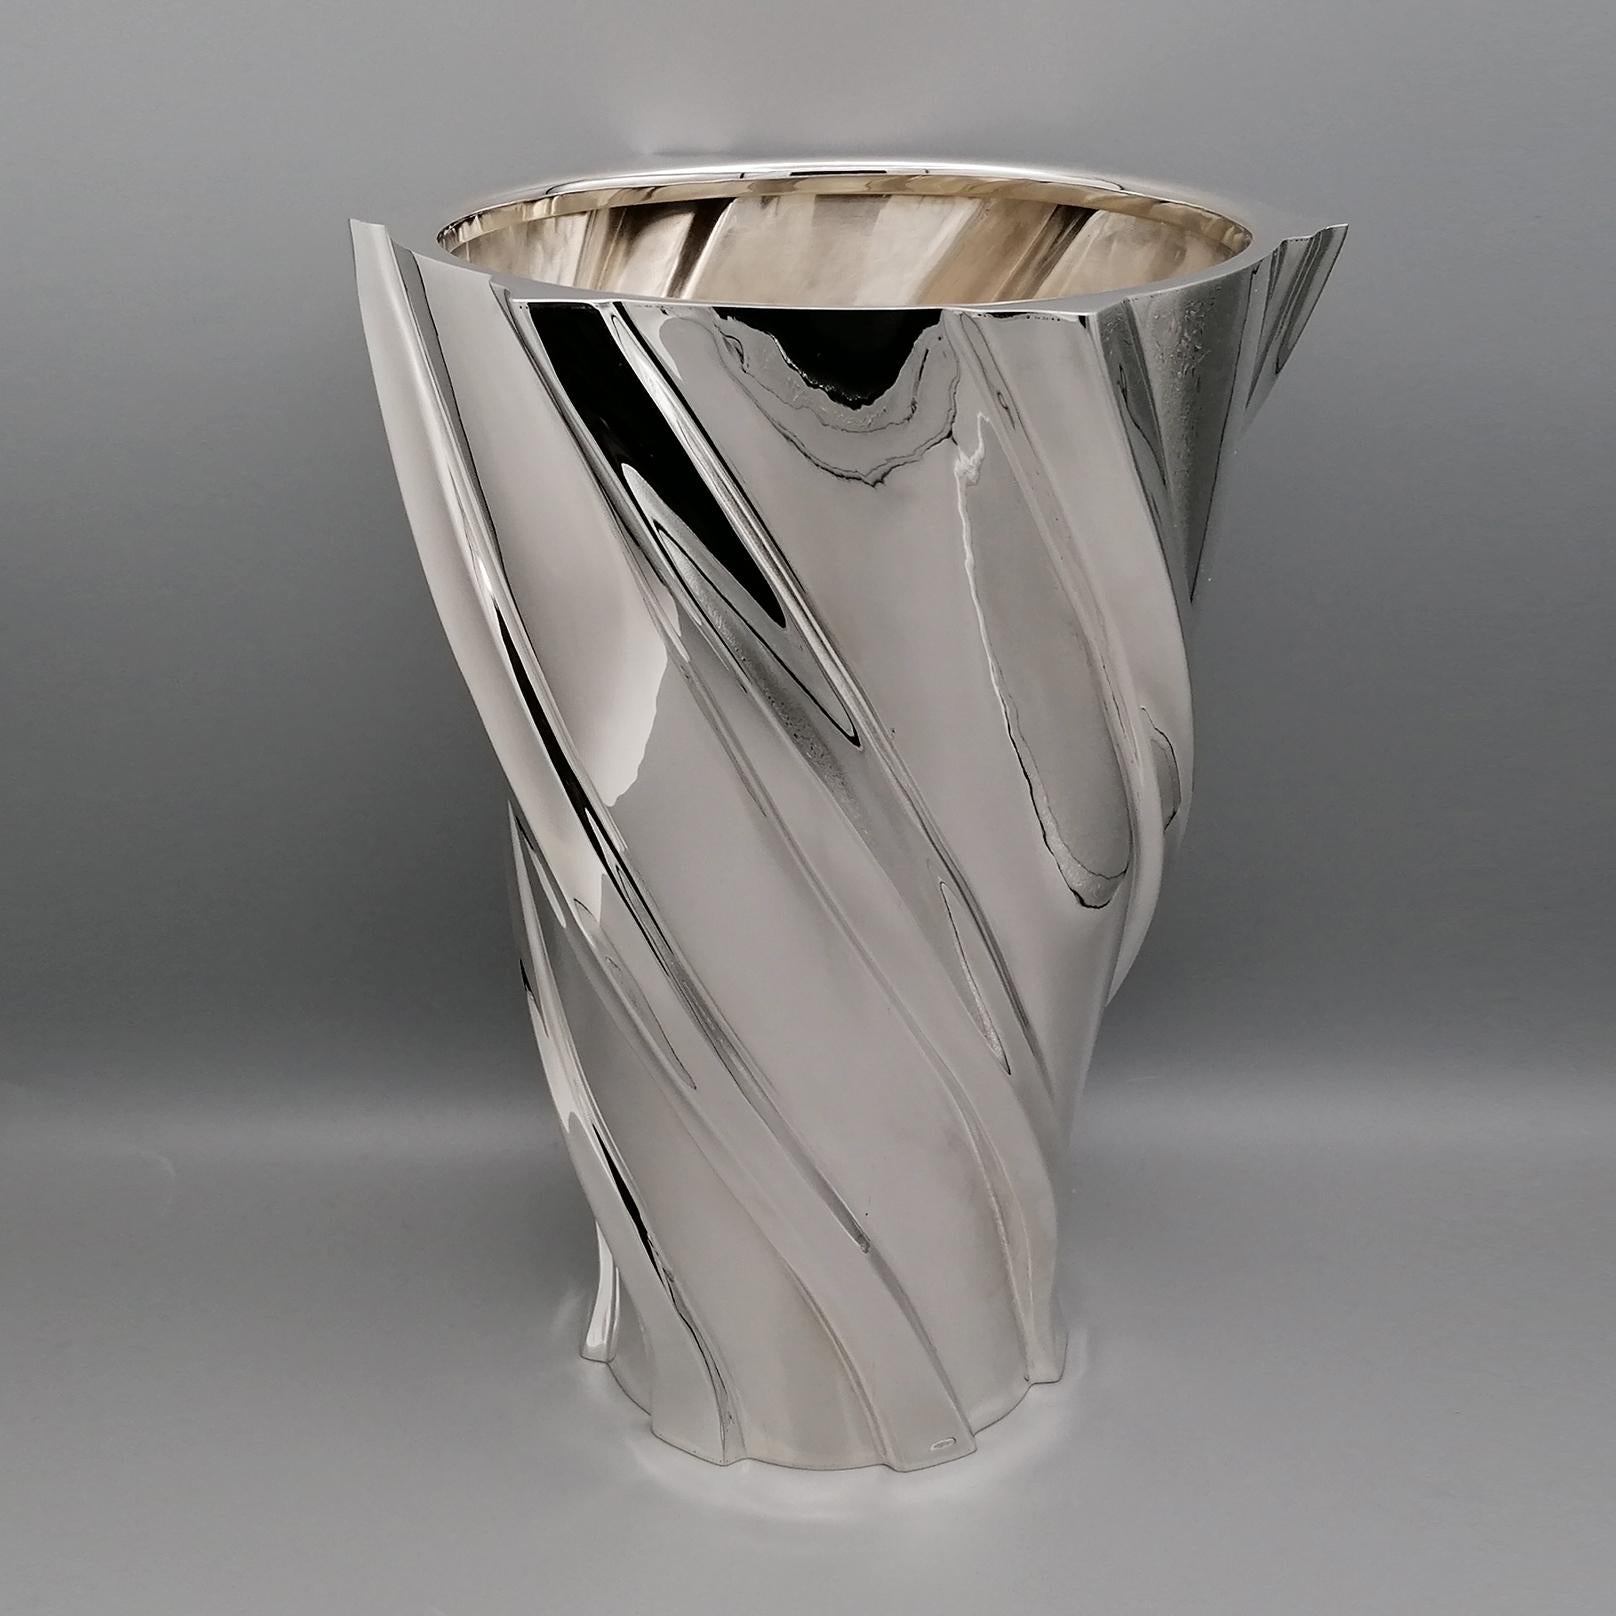 Vase en argent sterling, entièrement réalisé à la main à partir d'une feuille d'argent.
La forme du corps est conique.
La base, façonnée, mesure cm. 12.5 (4.92 in.) et s'étend jusqu'au sommet de la 